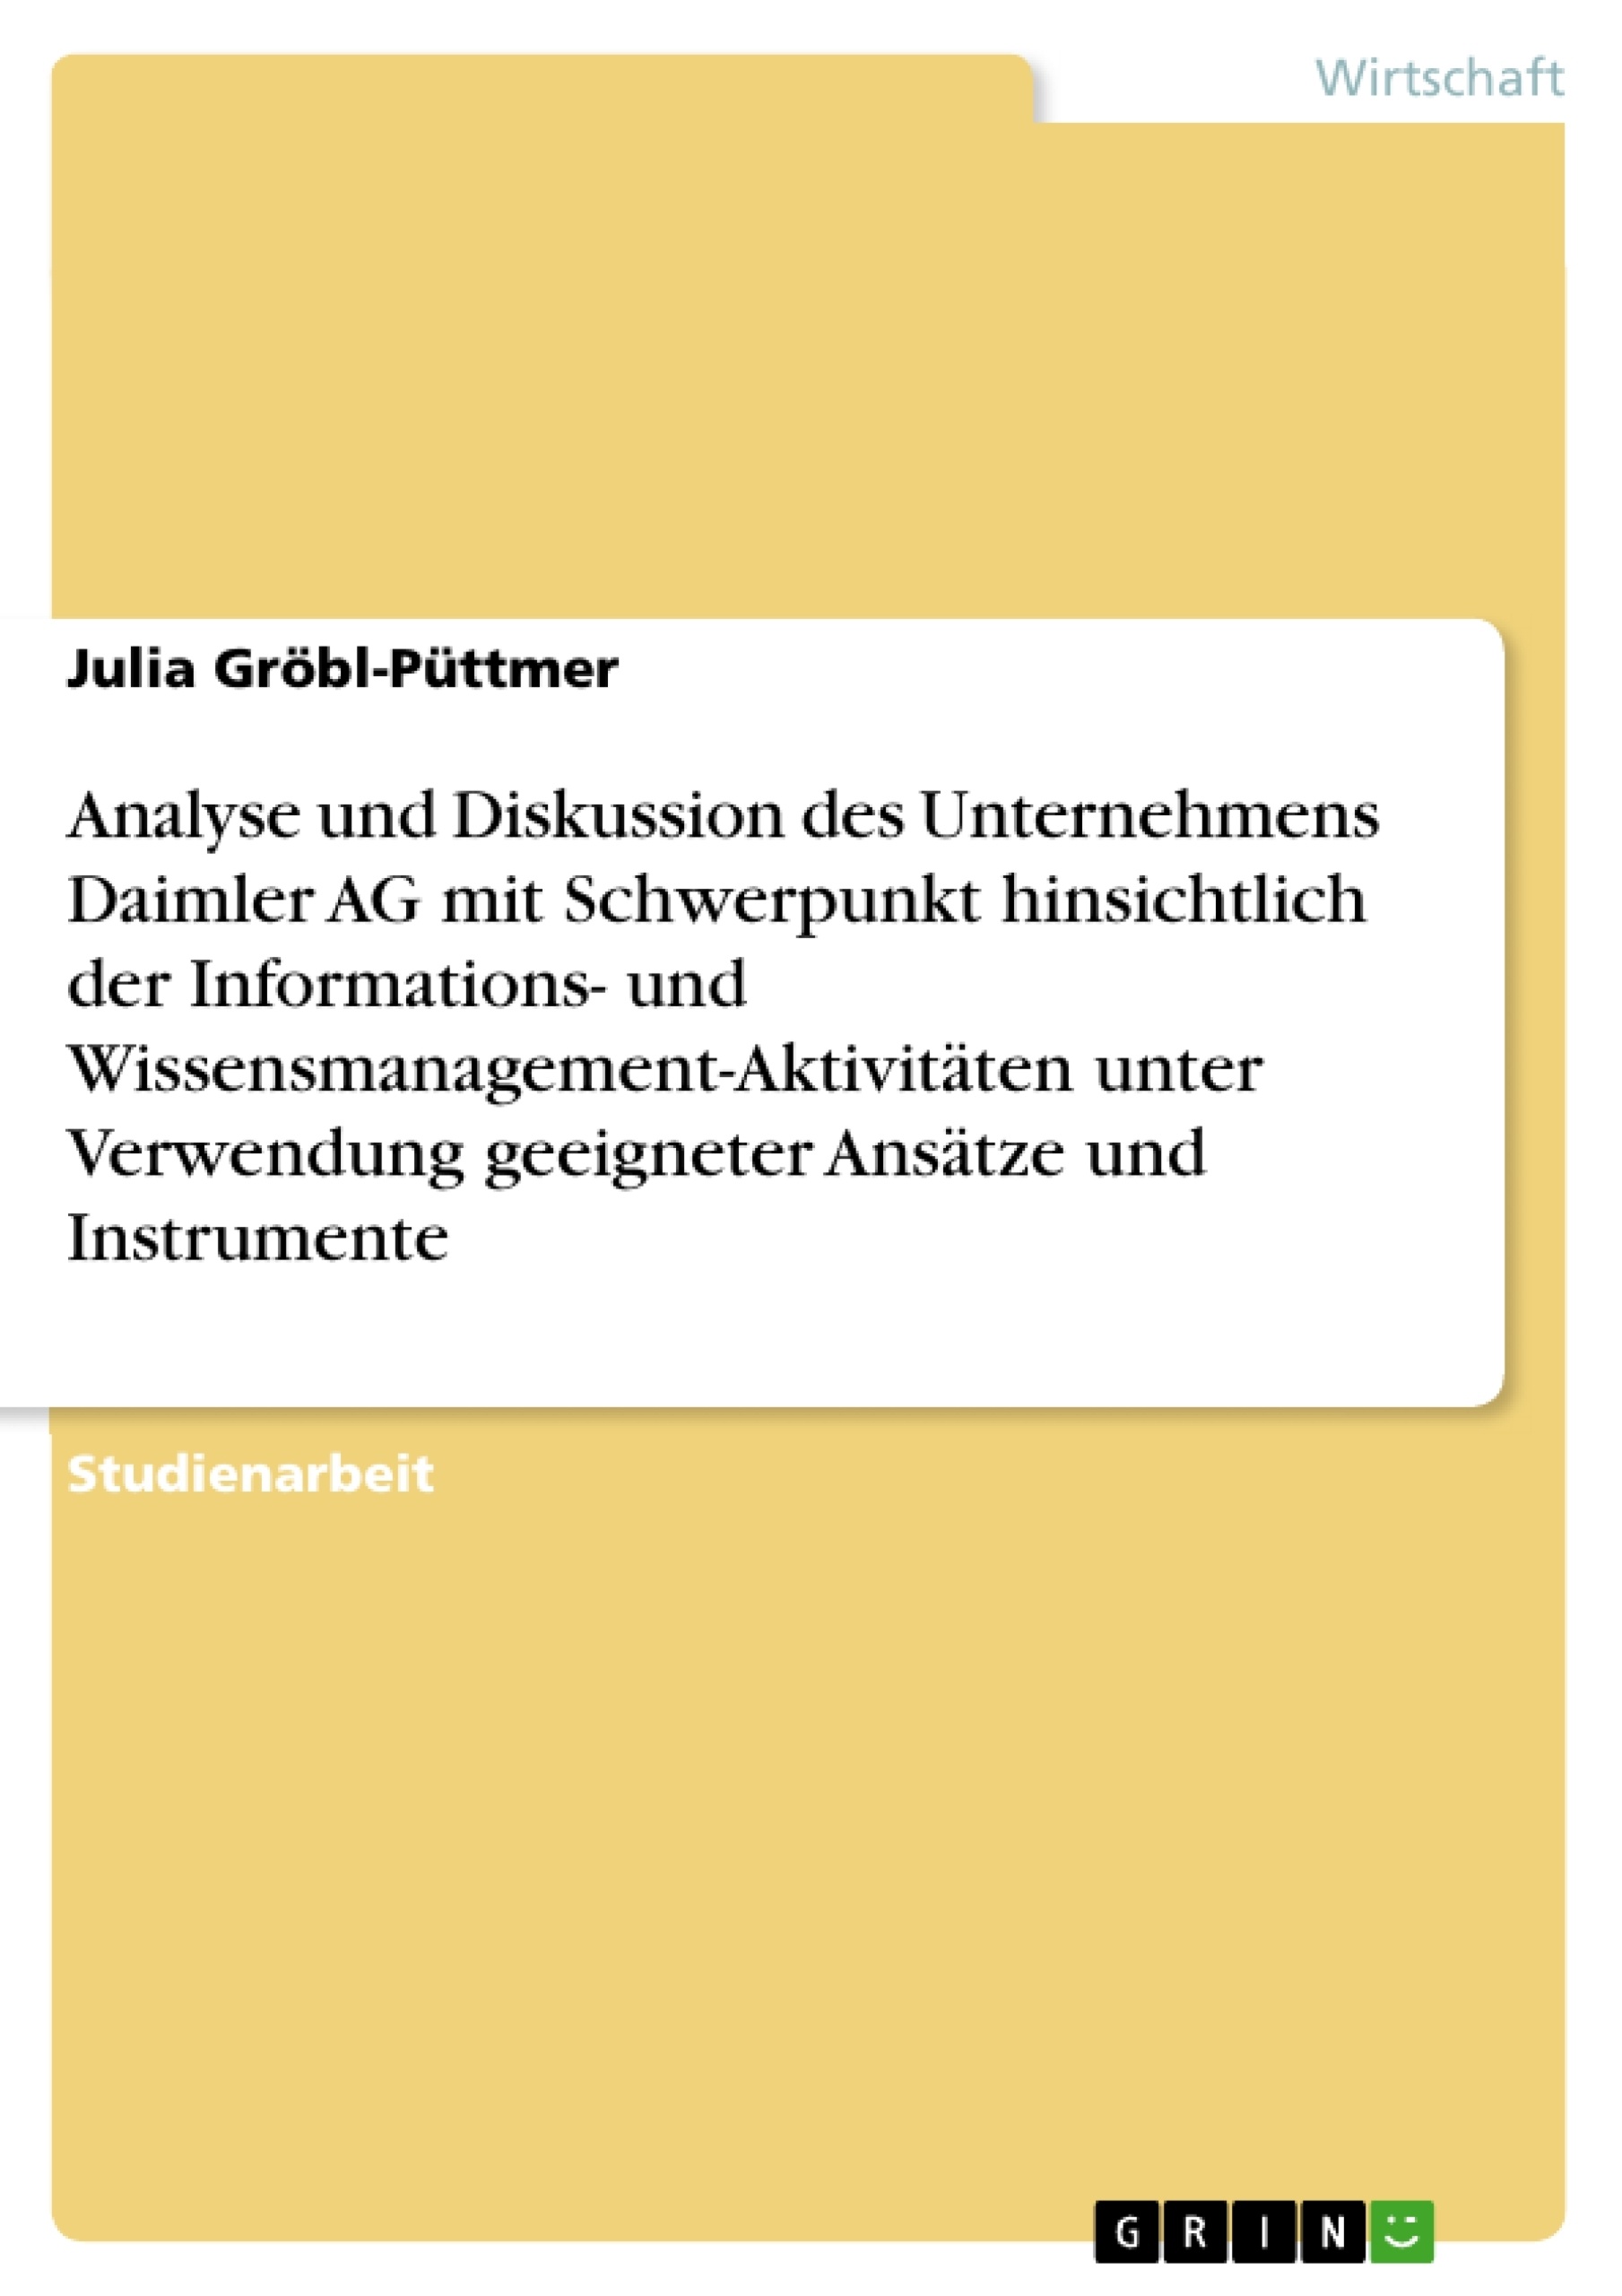 Titel: Analyse und Diskussion des Unternehmens Daimler AG mit Schwerpunkt hinsichtlich der Informations- und Wissensmanagement-Aktivitäten unter Verwendung geeigneter Ansätze und Instrumente